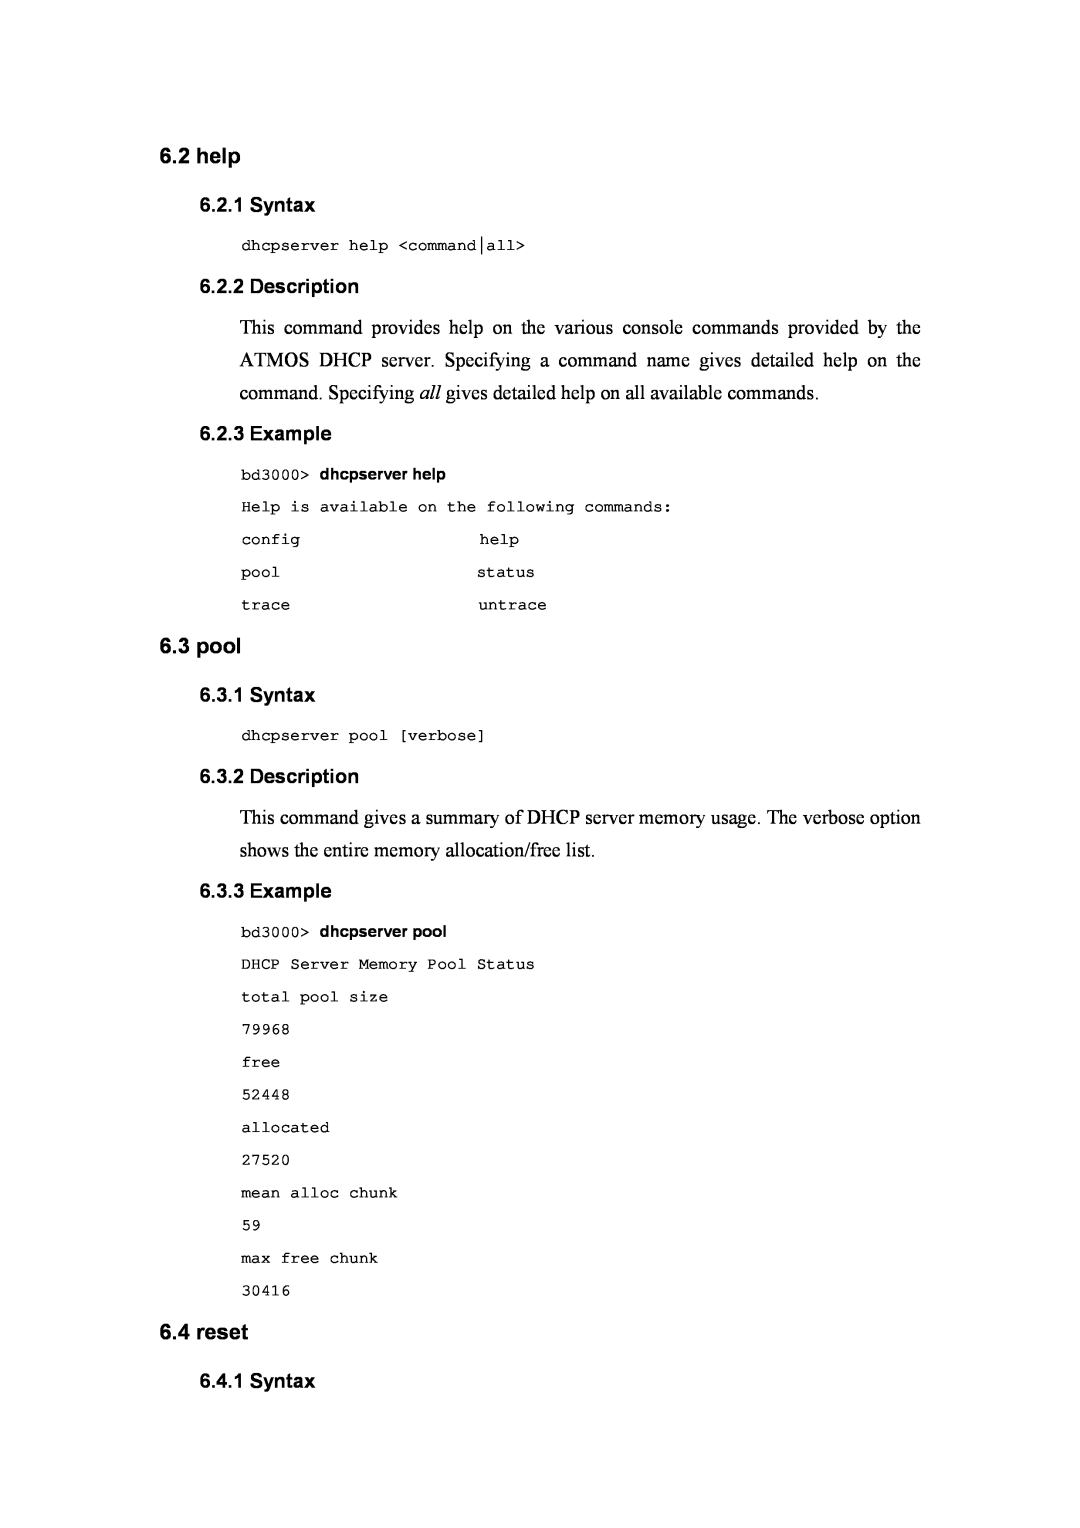 Atlantis Land A02-RA(Atmos)_ME01 manual help, pool, reset, Syntax, Description, Example 